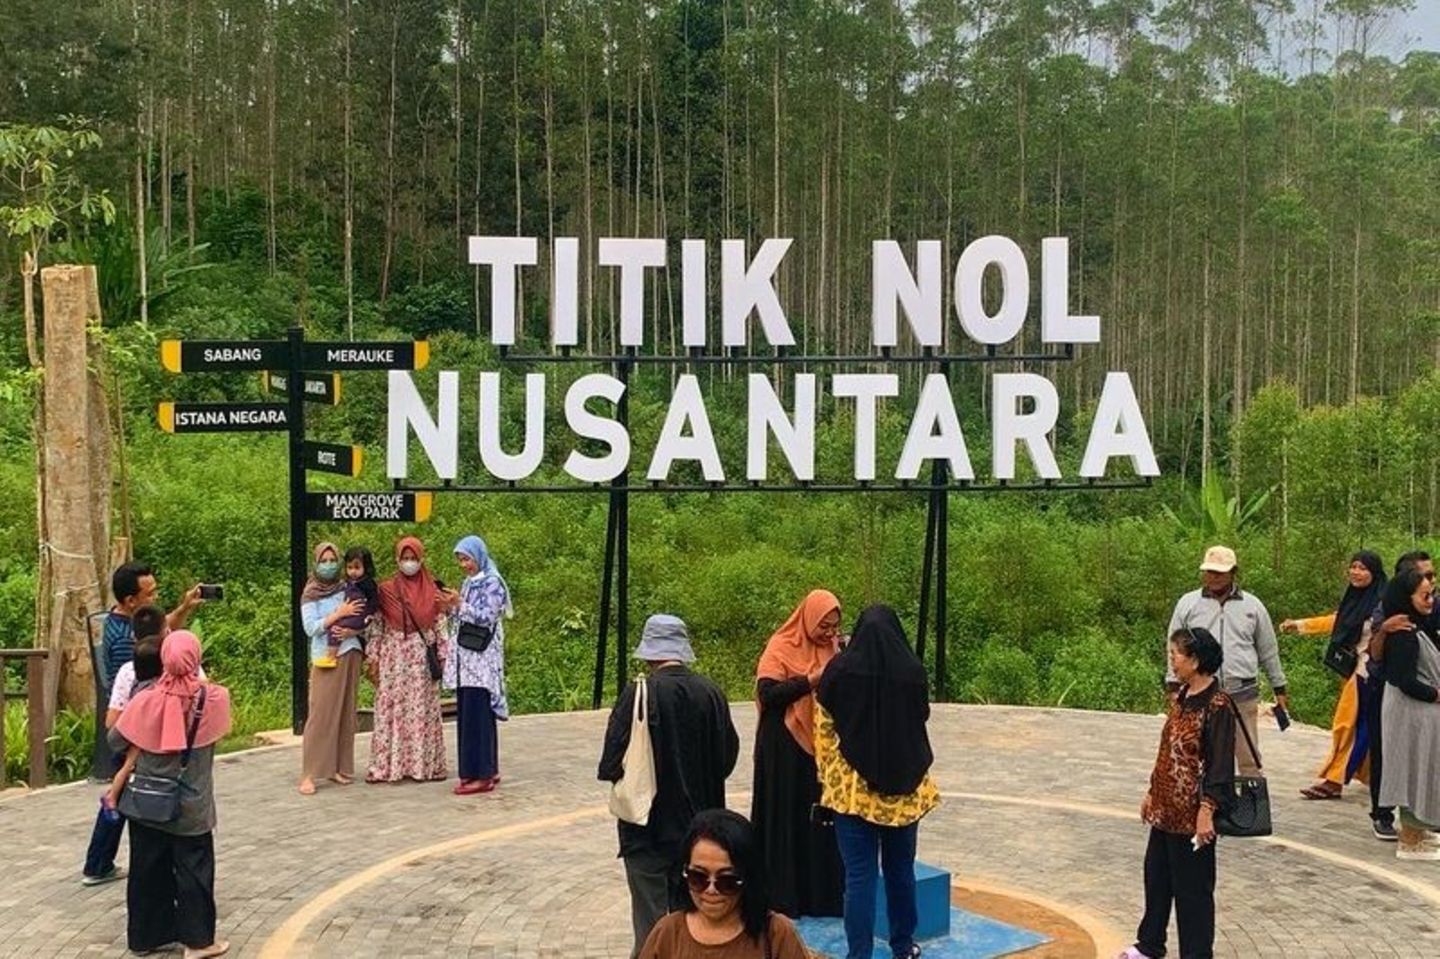 Einheimische besuchen das Gebiet, das als "Nusantara Ground Zero" bezeichnet wird. Hier entsteht gerade Nusantara, die neue Hauptstadt Indonesiens